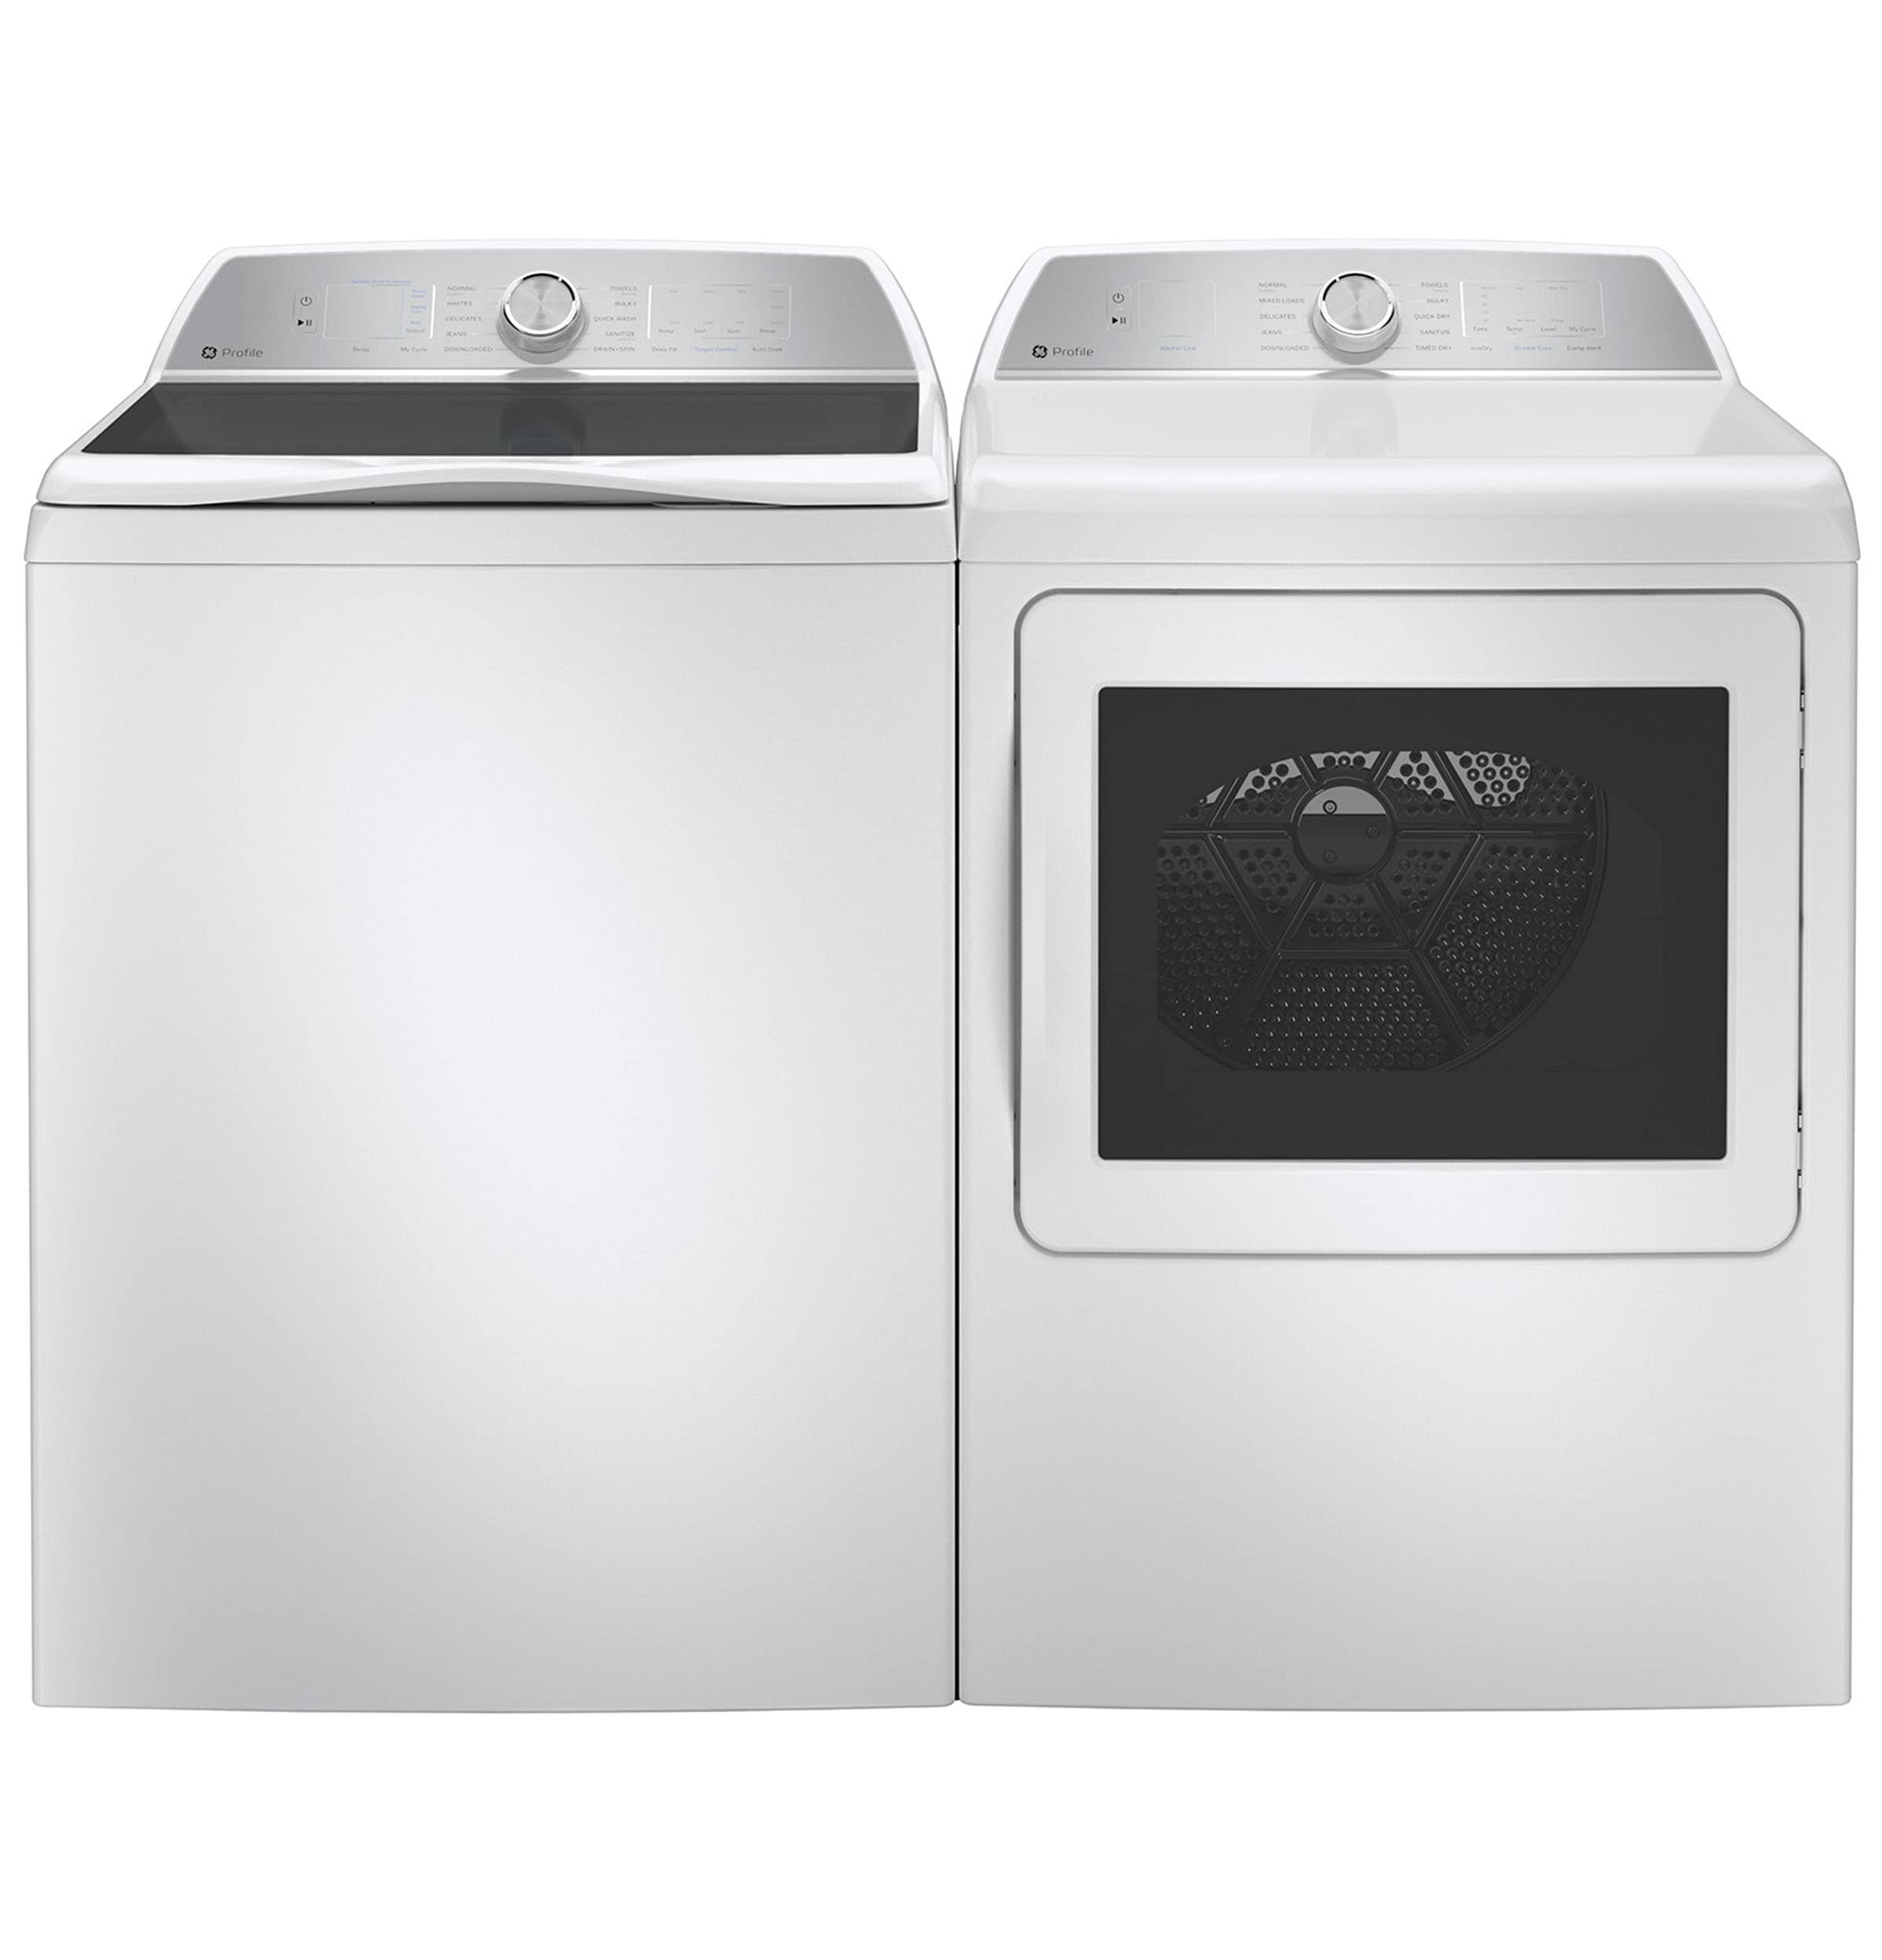 GE Impeller Washer & Dryer Sets at